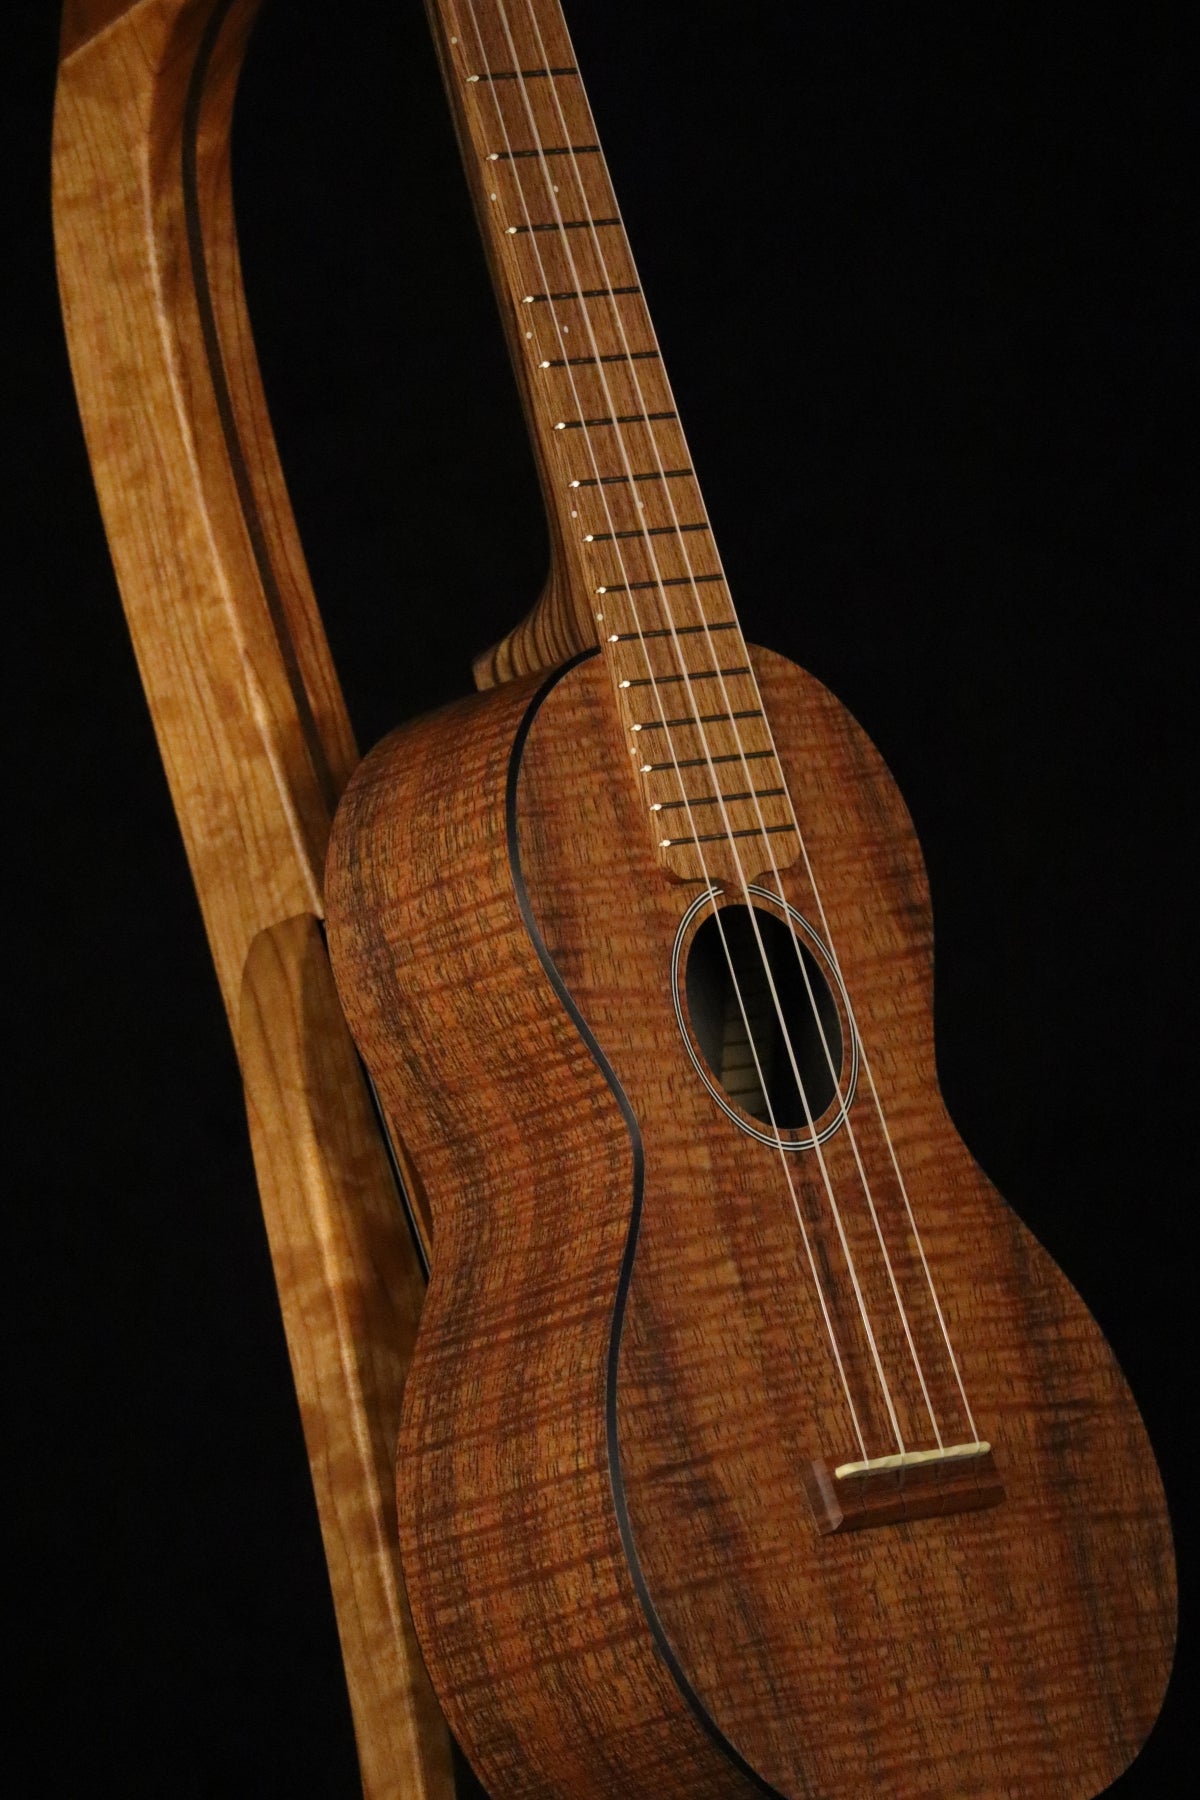 Folding cherry and walnut wood ukulele floor stand closeup front image with Martin ukulele